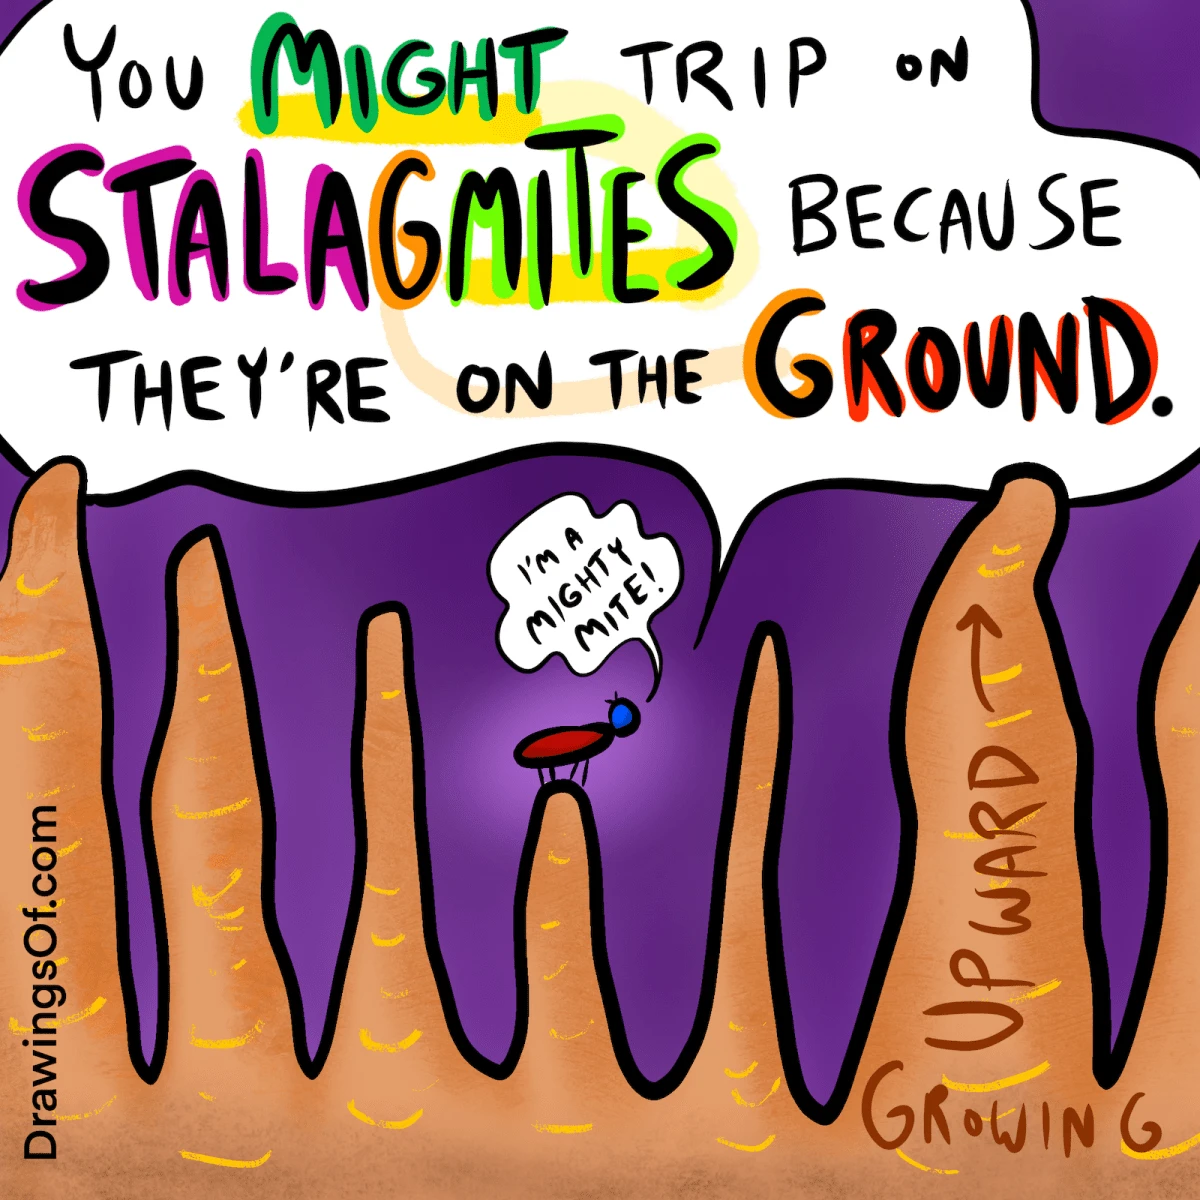 Stalagmites definition